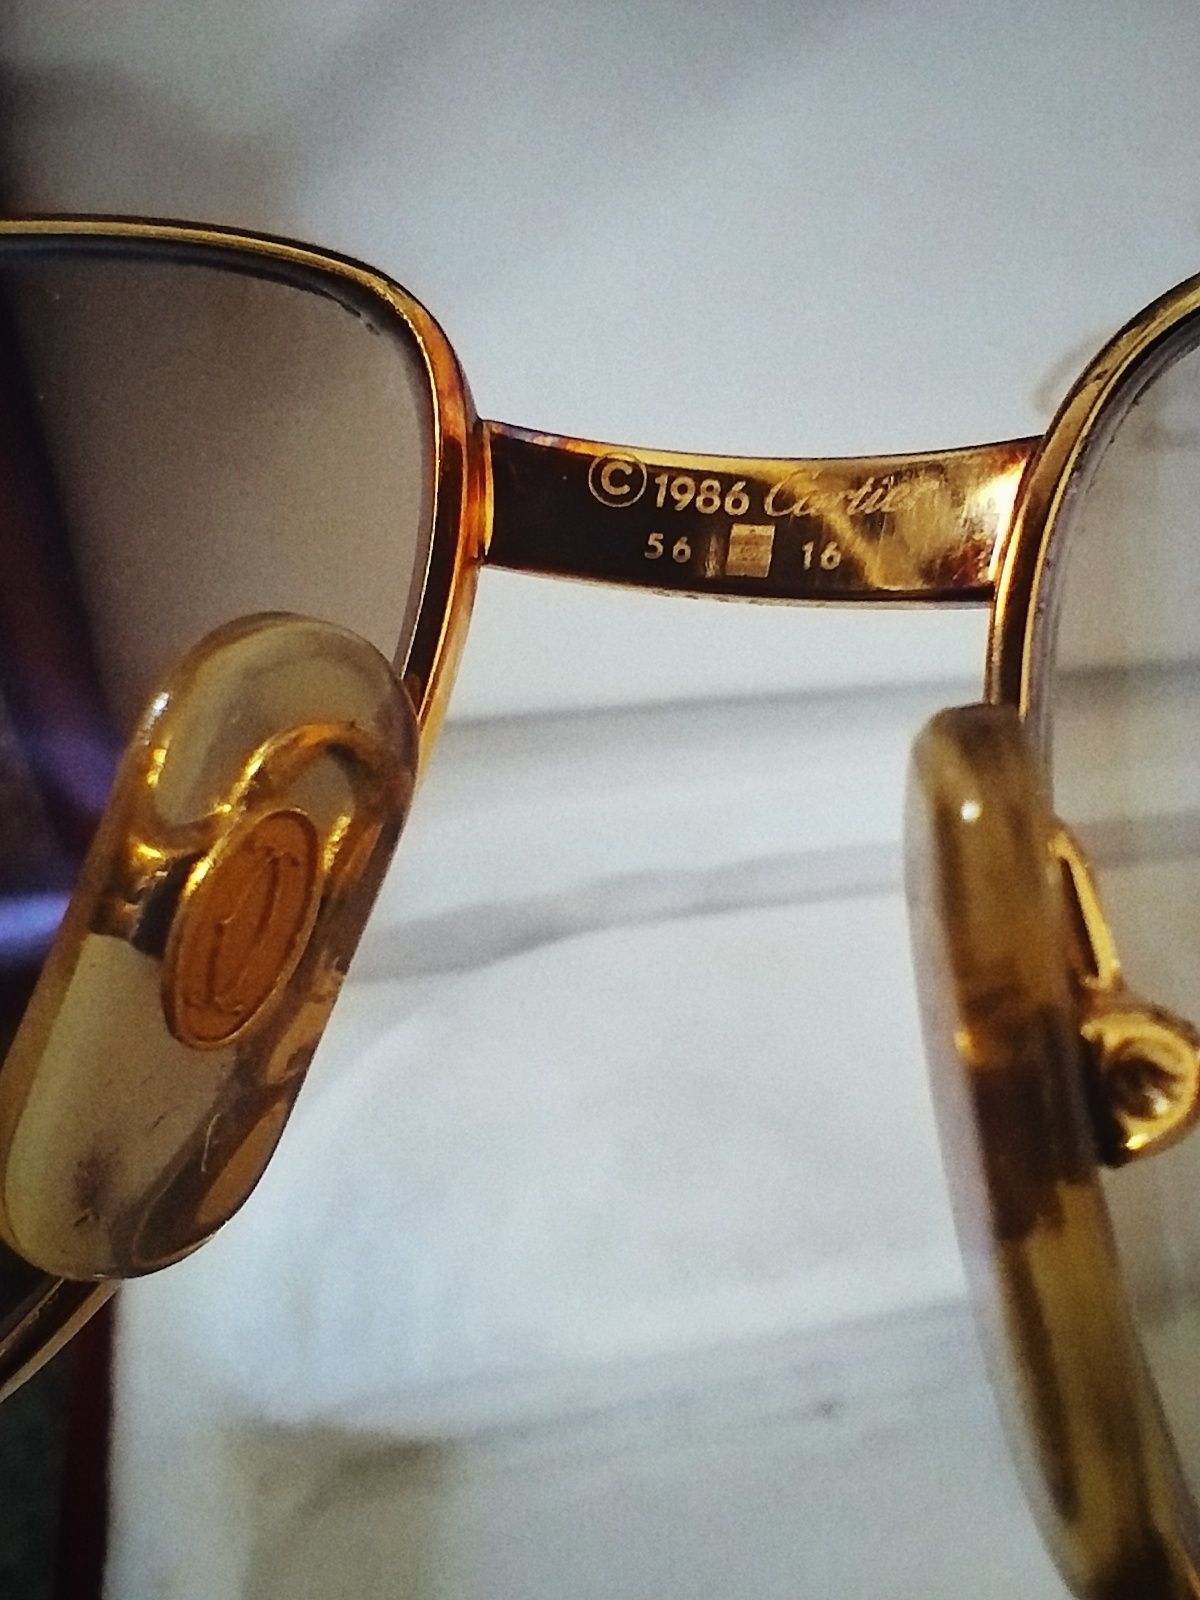 Óculos Cartier Romance Louis 56-16 em ouro 22k